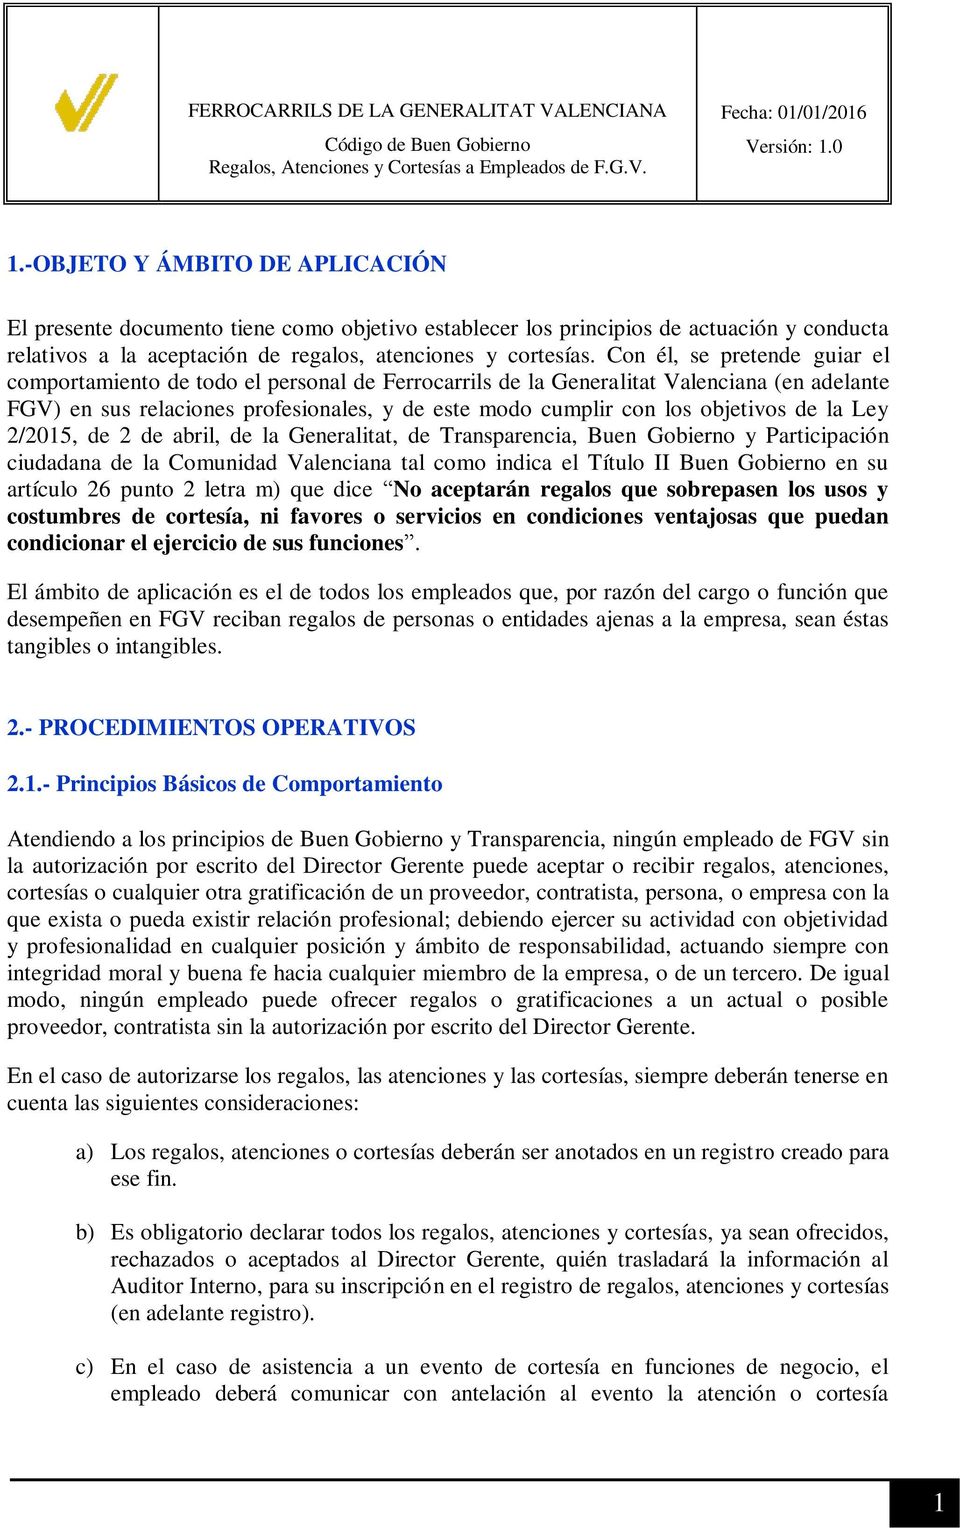 objetivos de la Ley 2/2015, de 2 de abril, de la Generalitat, de Transparencia, Buen Gobierno y Participación ciudadana de la Comunidad Valenciana tal como indica el Título II Buen Gobierno en su